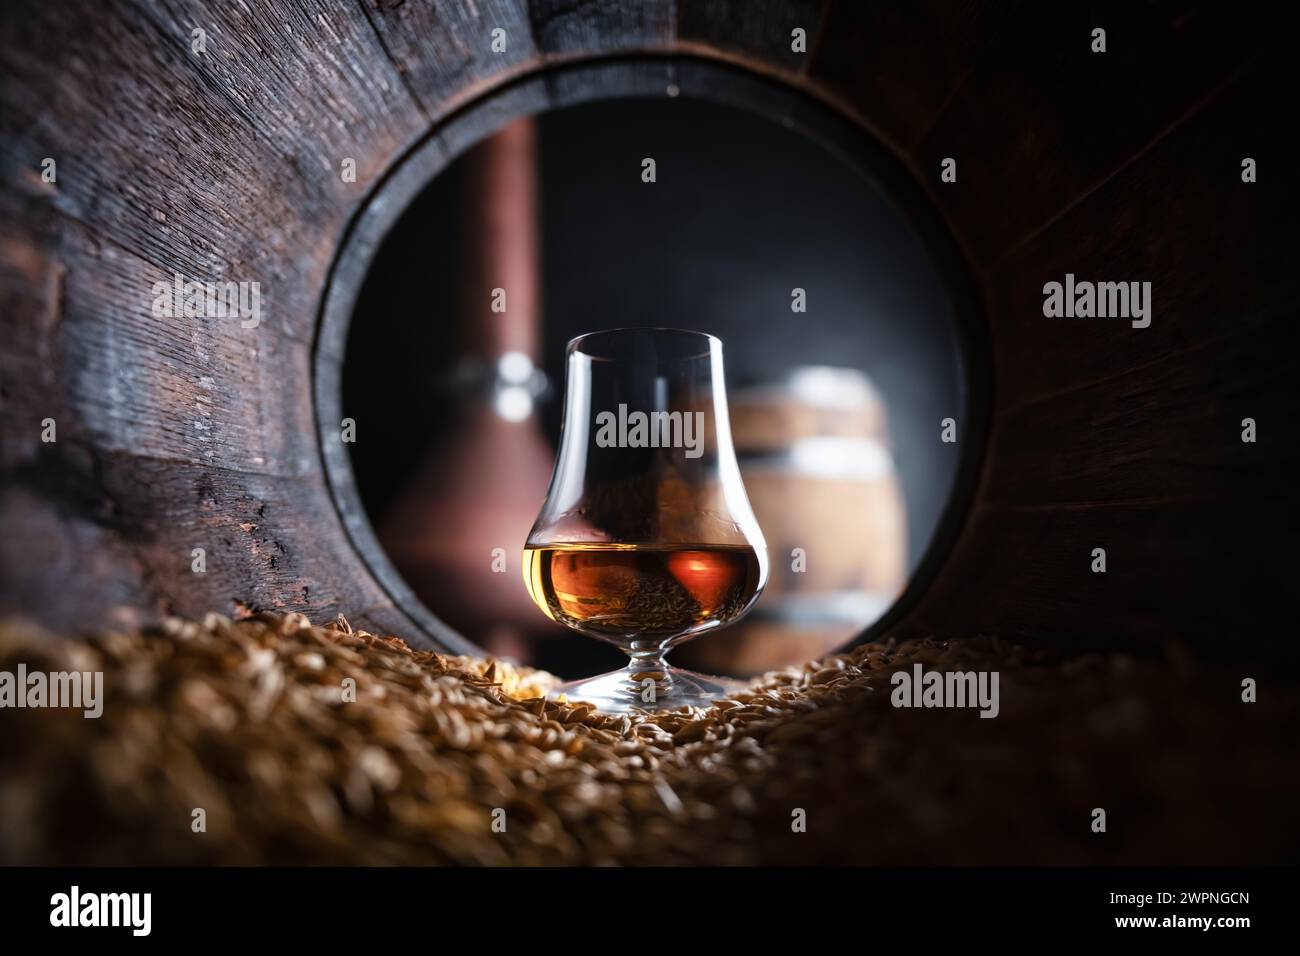 Un verre de whisky bourbon dans un vieux fût de chêne. Cuivre alambic et fût de chêne sur fond. Concept traditionnel de distillerie d'alcool Banque D'Images